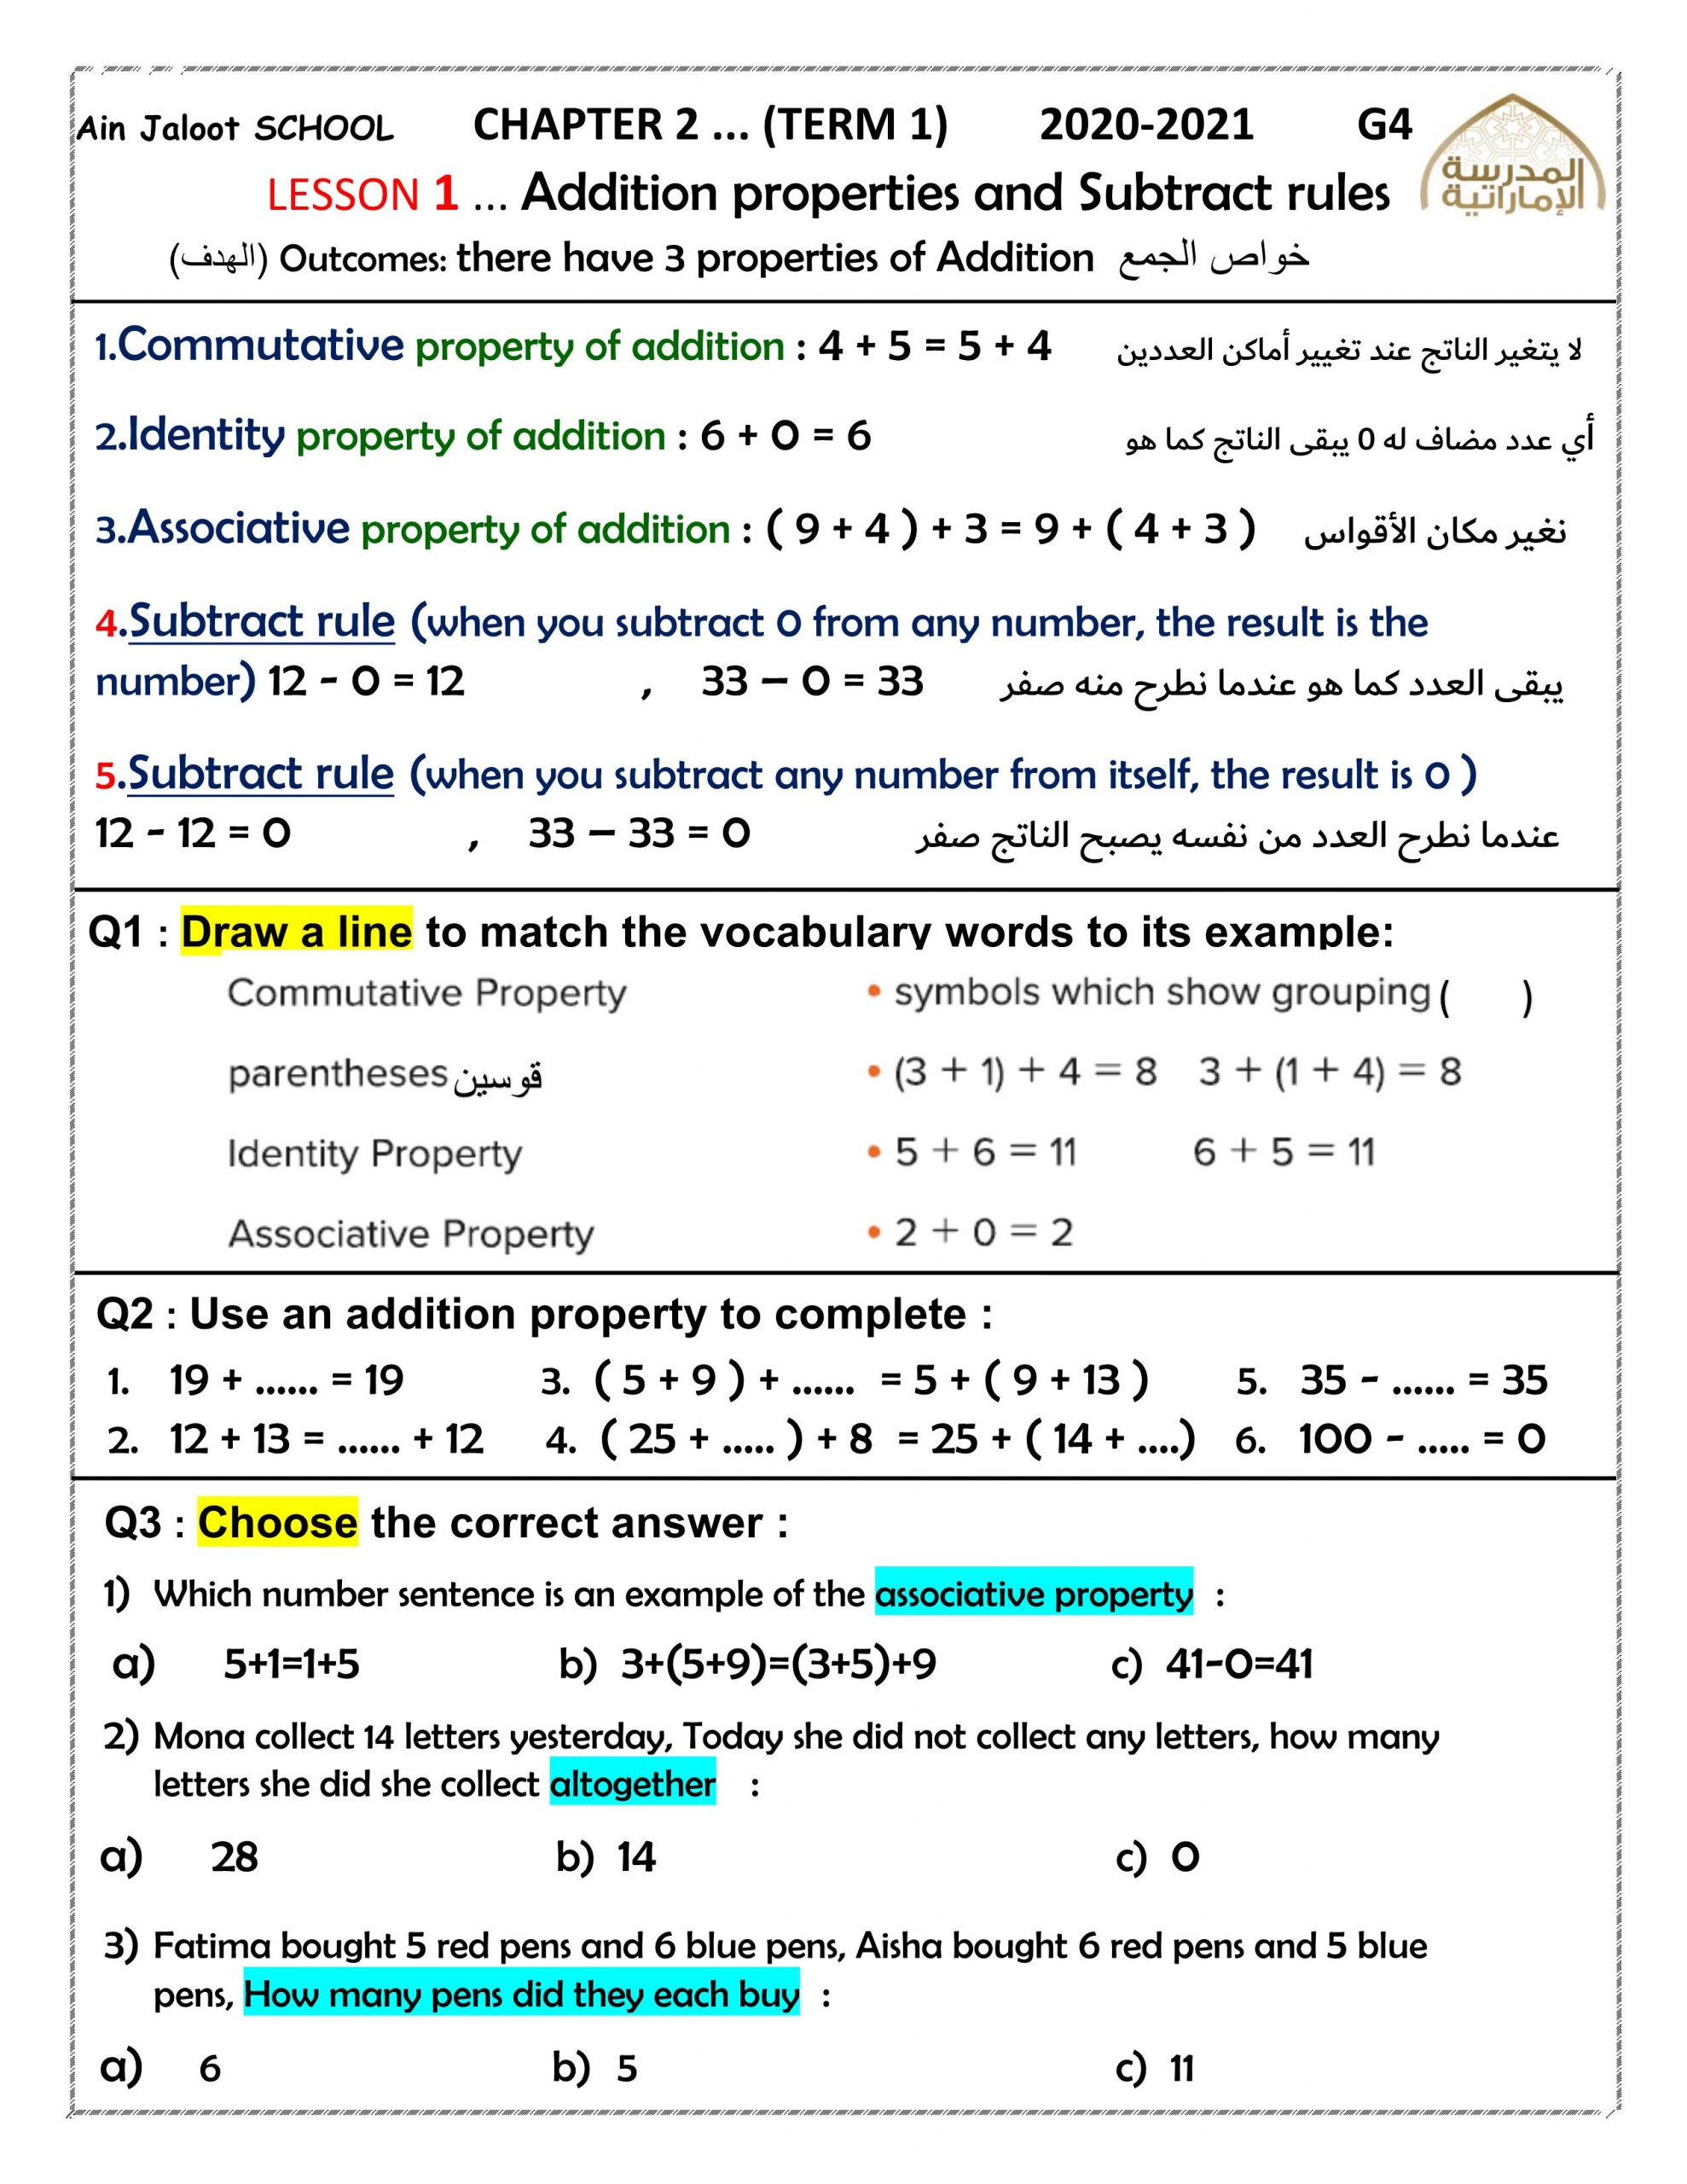 حل اوراق عمل CHAPTER 4 بالانجليزي الصف الرابع مادة الرياضيات المتكاملة